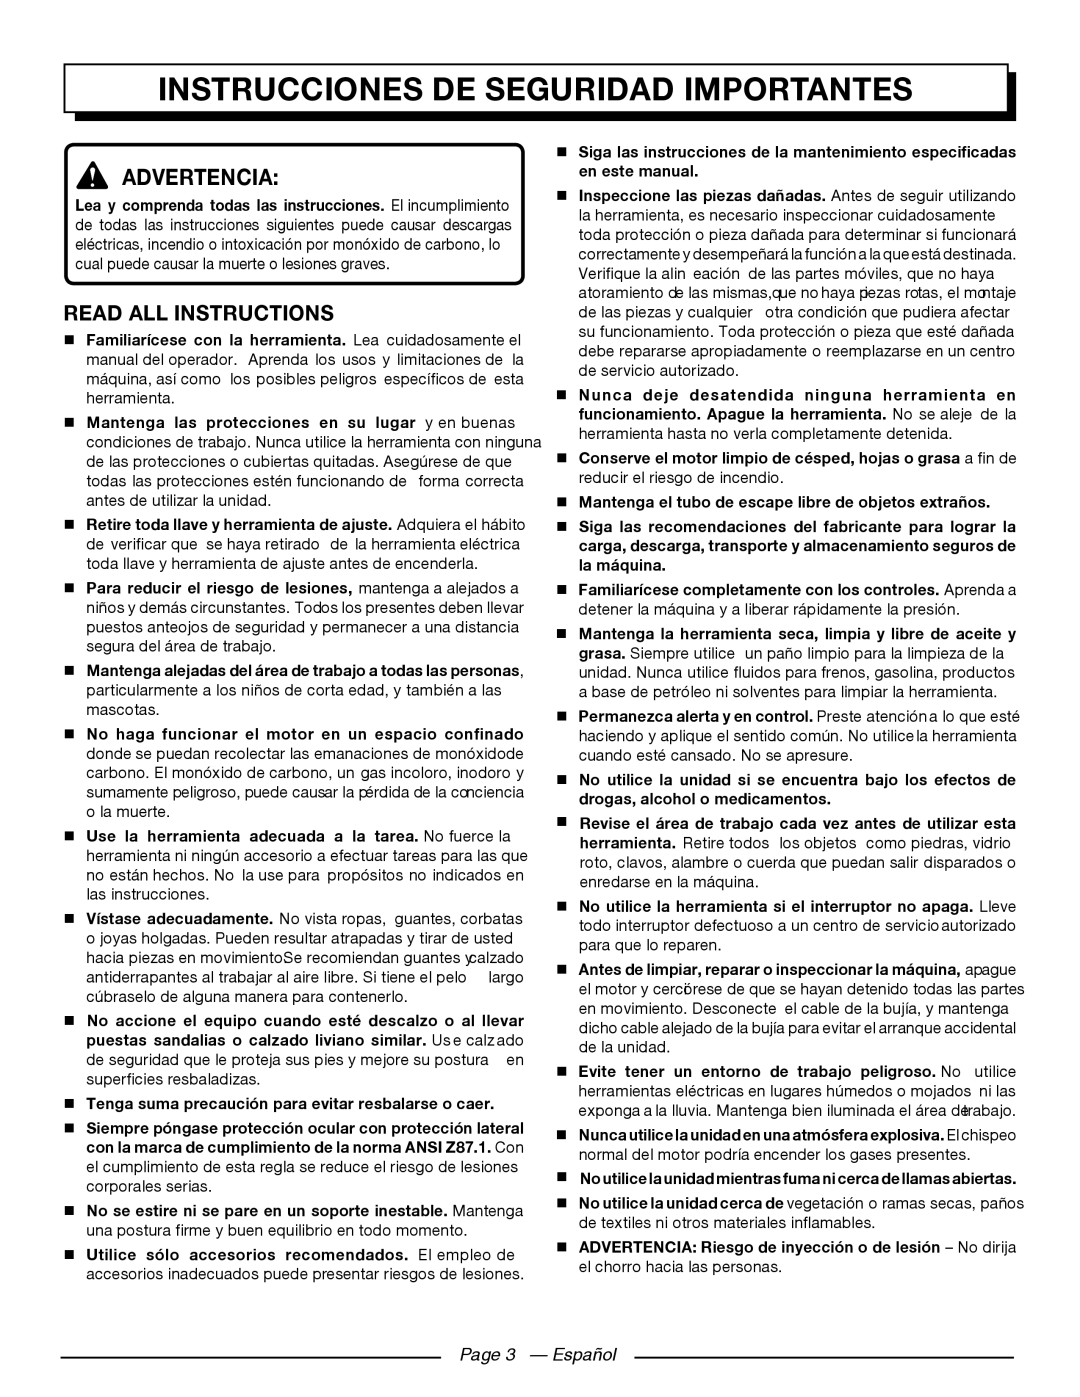 Homelite UT80709, UT80911 Instrucciones De Seguridad Importantes, Advertencia, Read All Instructions, Page 3 - Español 